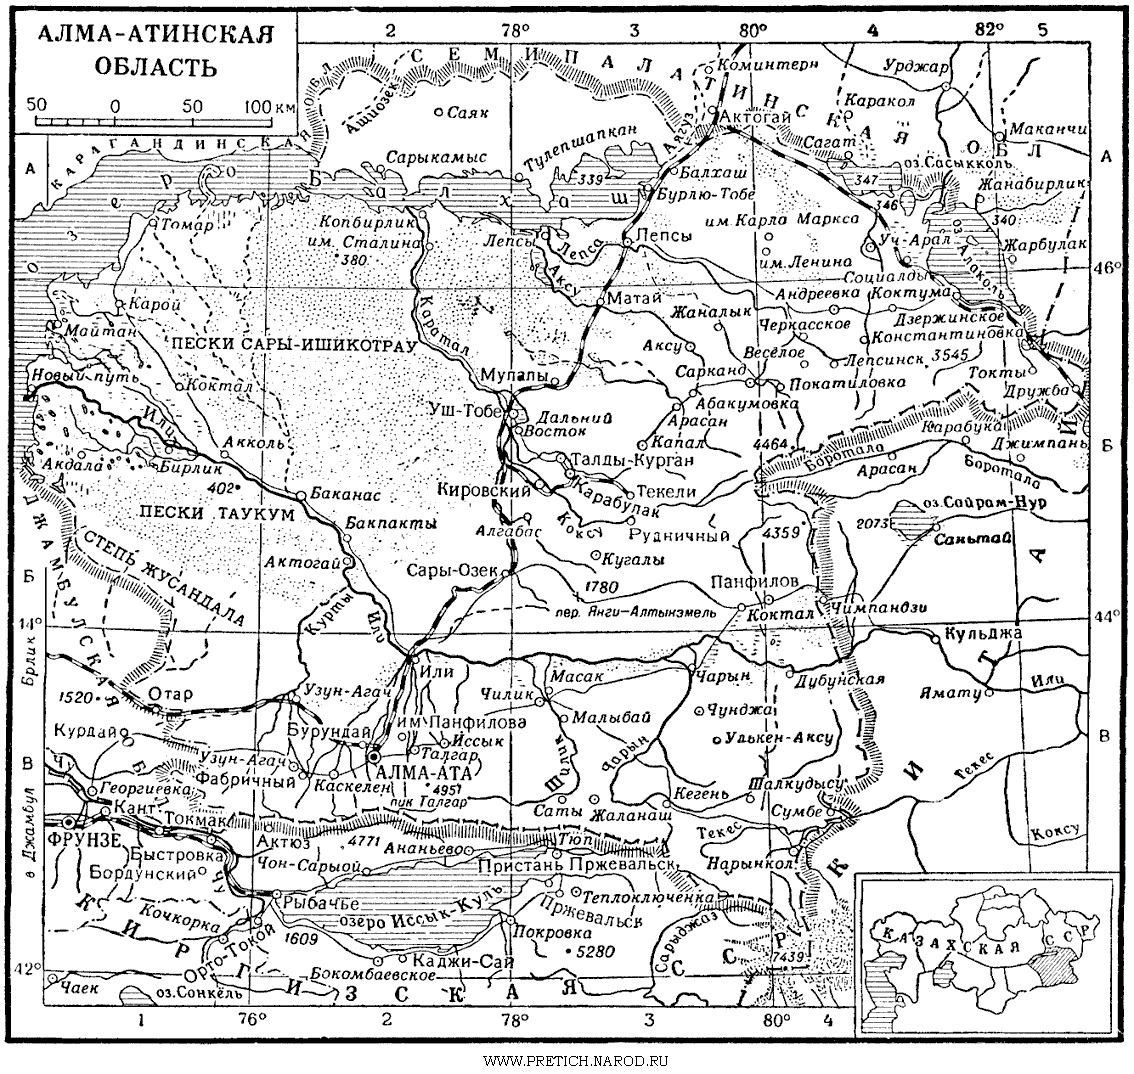 Алма-Атинская область Казахской ССР, 70-е годы ХХ века